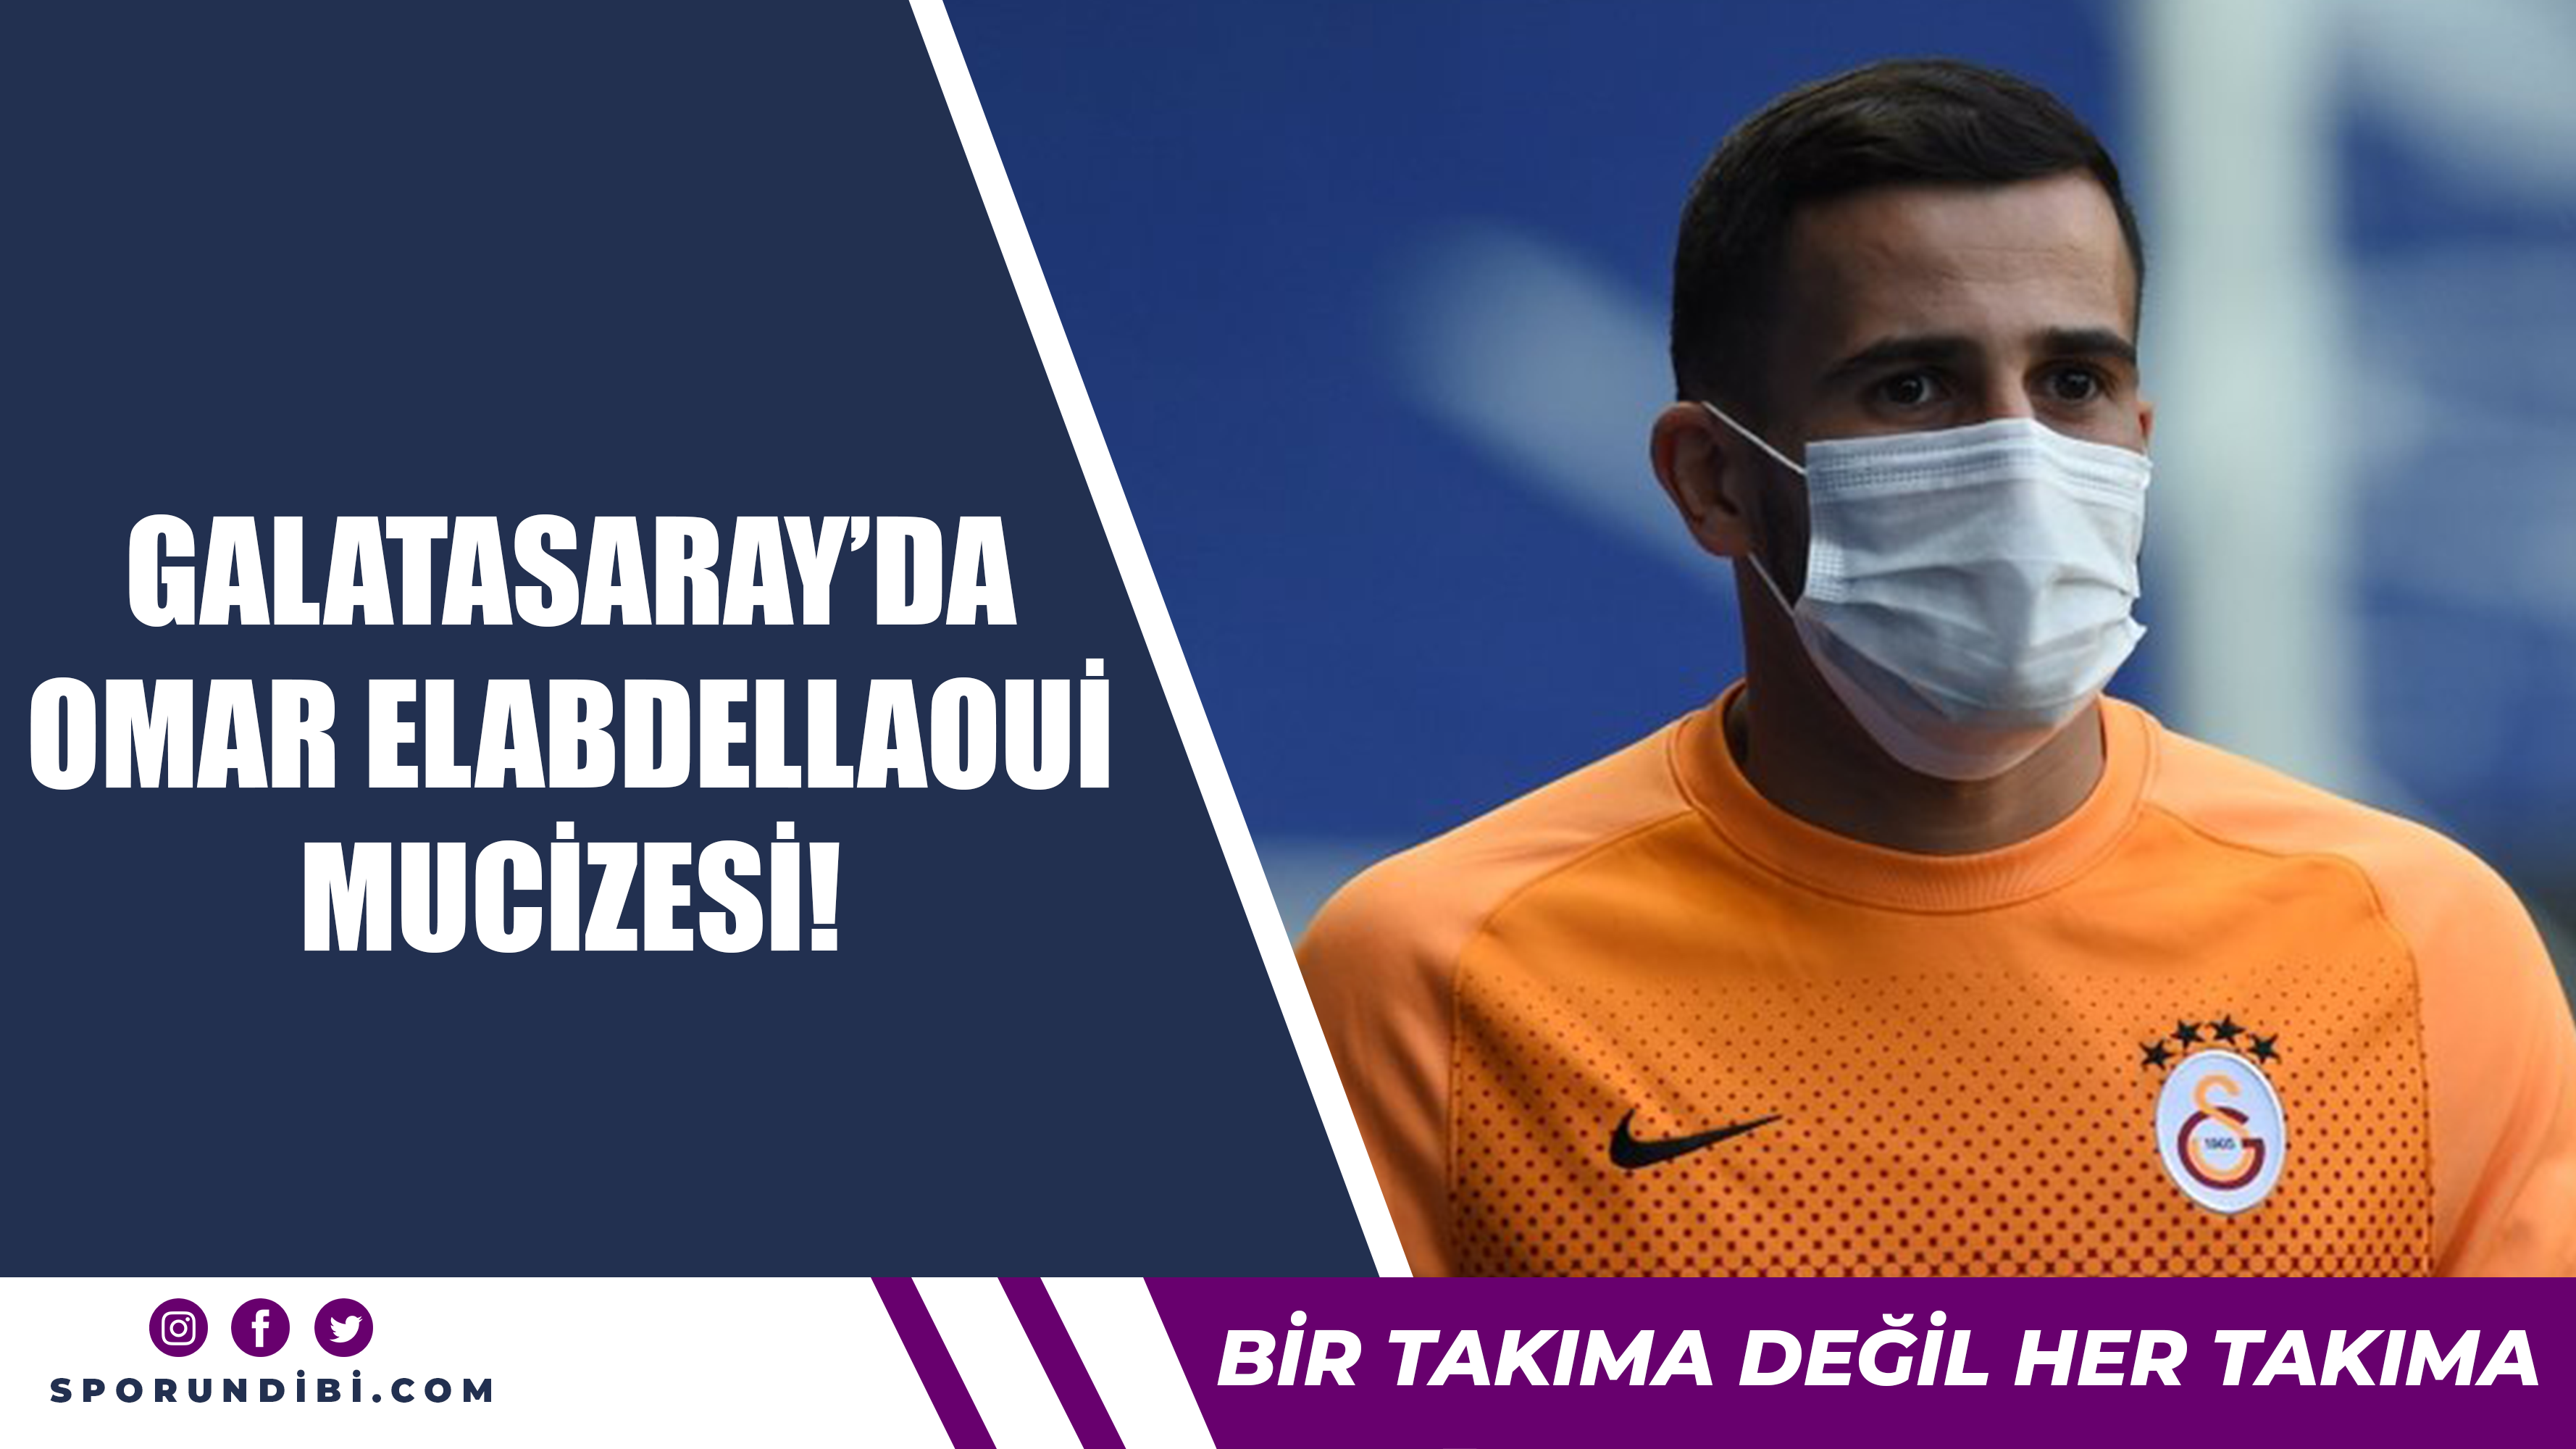 Galatasaray'da Omar Elabdellaoui mucizesi!